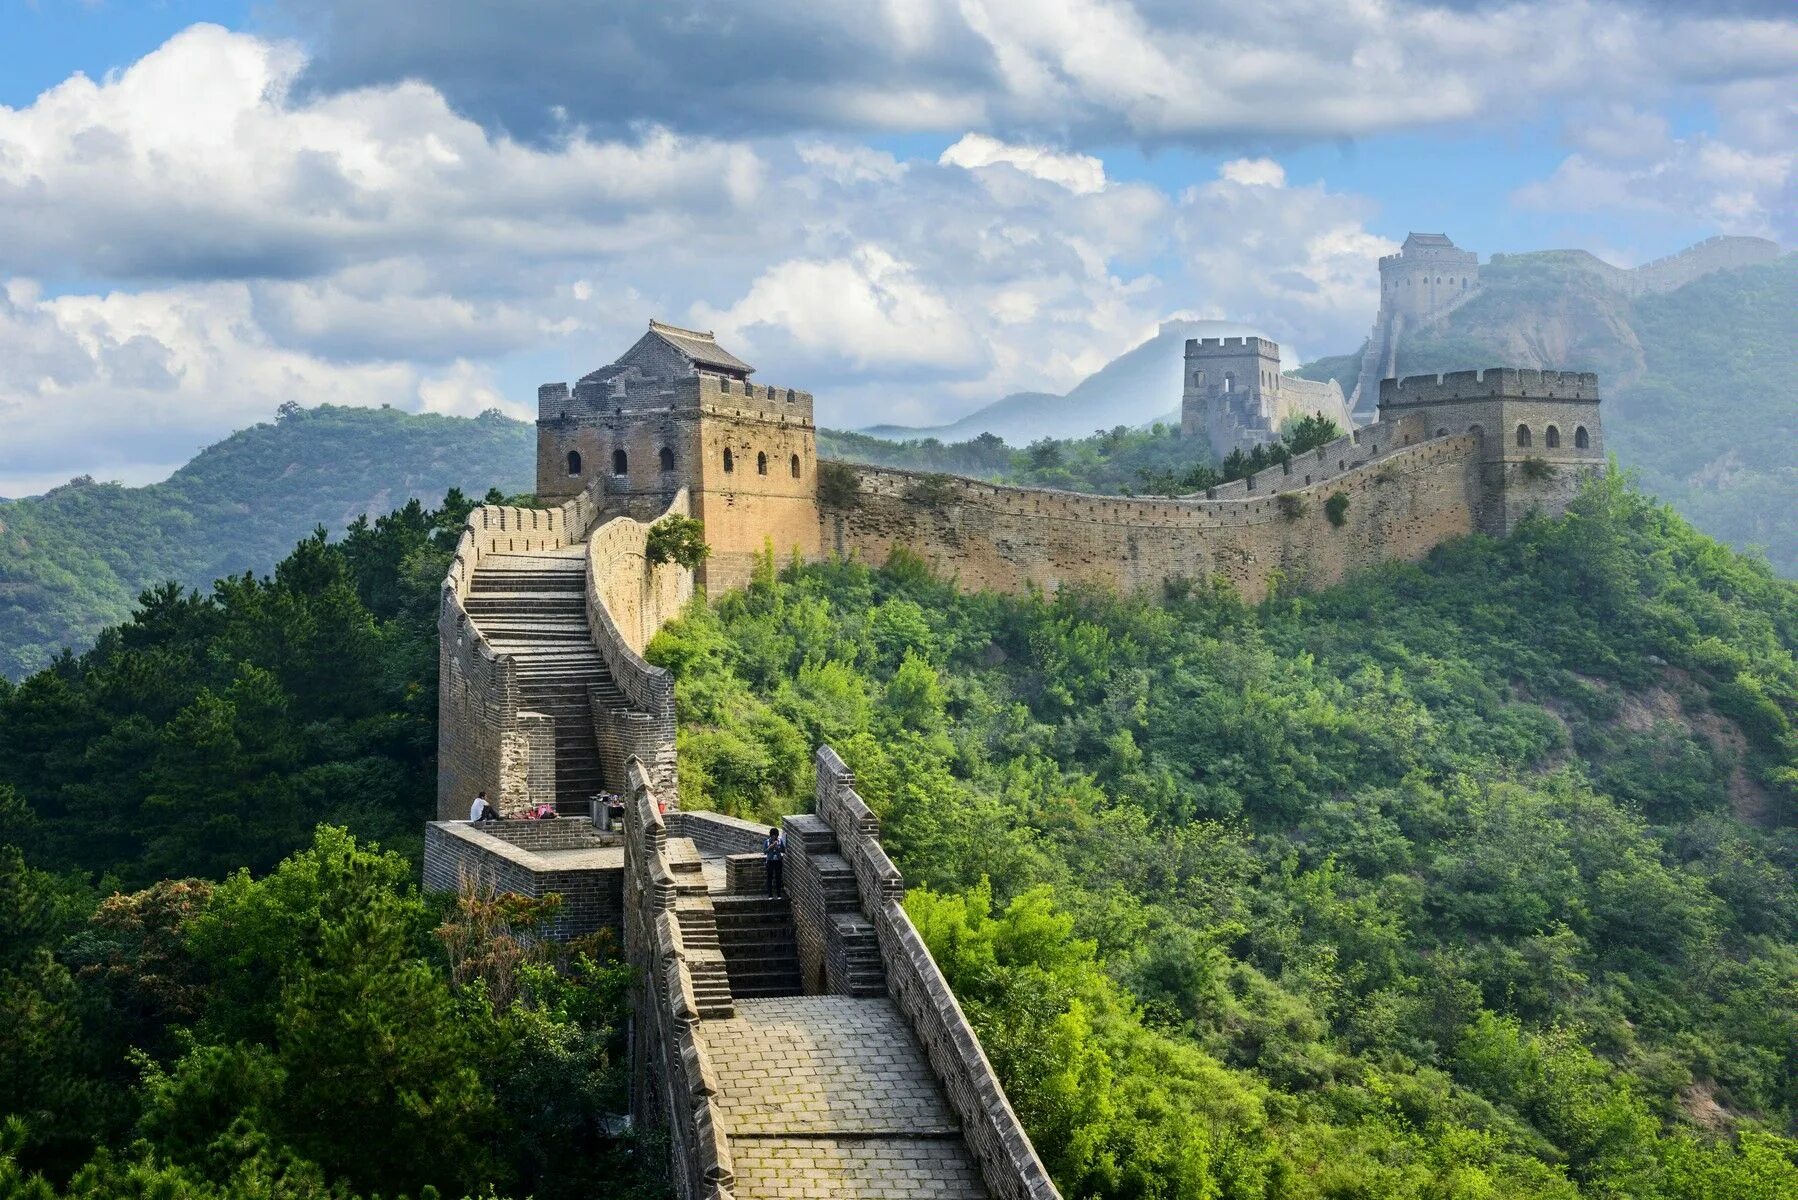 Края китайской стены. Мутяньюй Великая китайская стена. Пекин китайская стена. Великая китайская стена Династия Цинь. Великая китайская стена сторожевые башни.